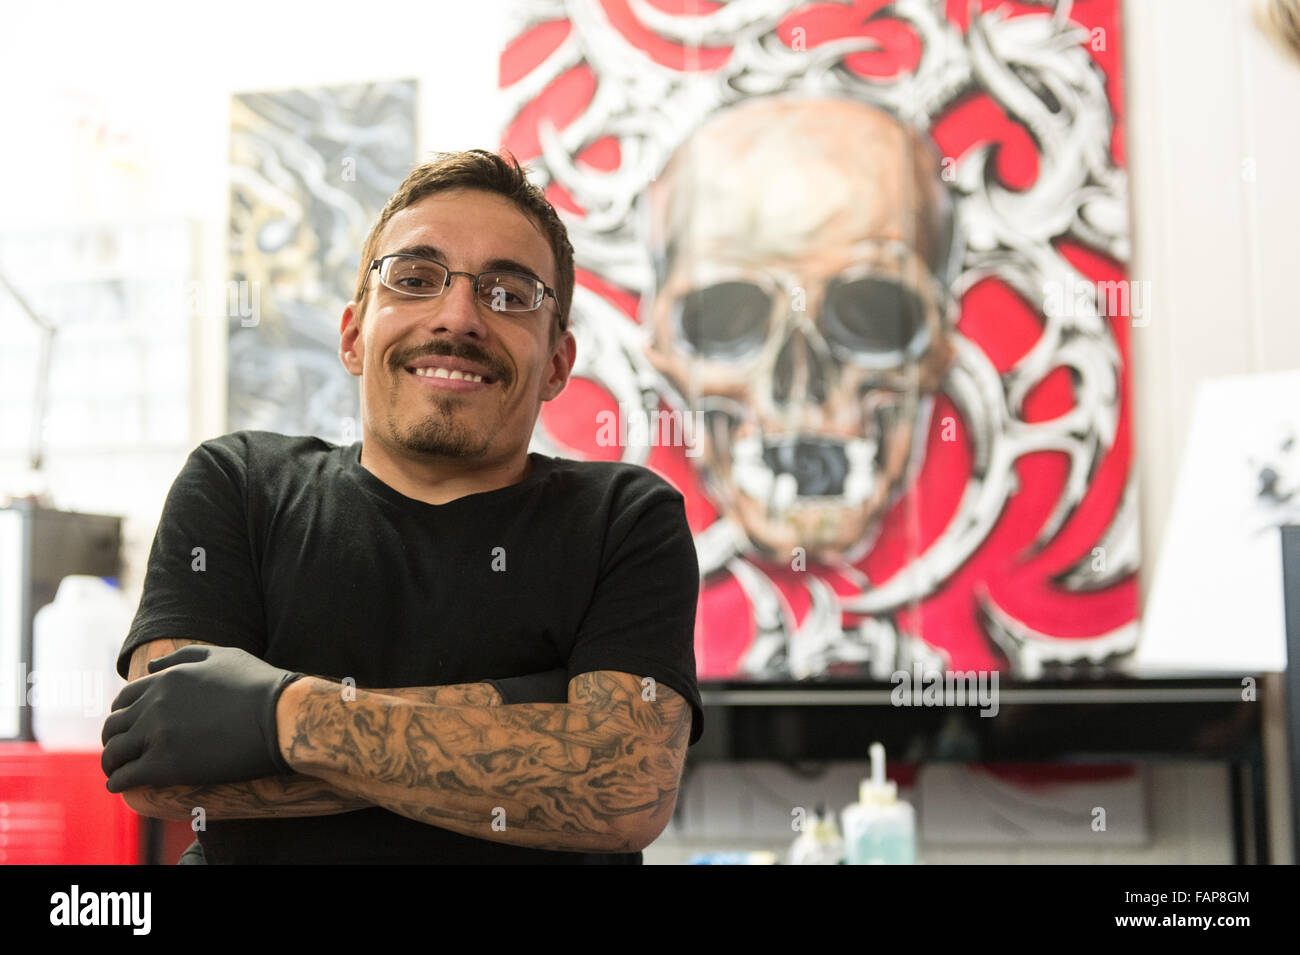 Genève, Suisse. Août 14, 2015. Dennis Weber, un homme avec nanisme, pose dans un studio de tatouage à Aesch, Suisse, 14 août 2015. De nombreuses personnes atteintes de nanisme font face à des problèmes lors de la recherche d'un emploi. Photo : PATRICK SEEGER/dpa/Alamy Live News Banque D'Images